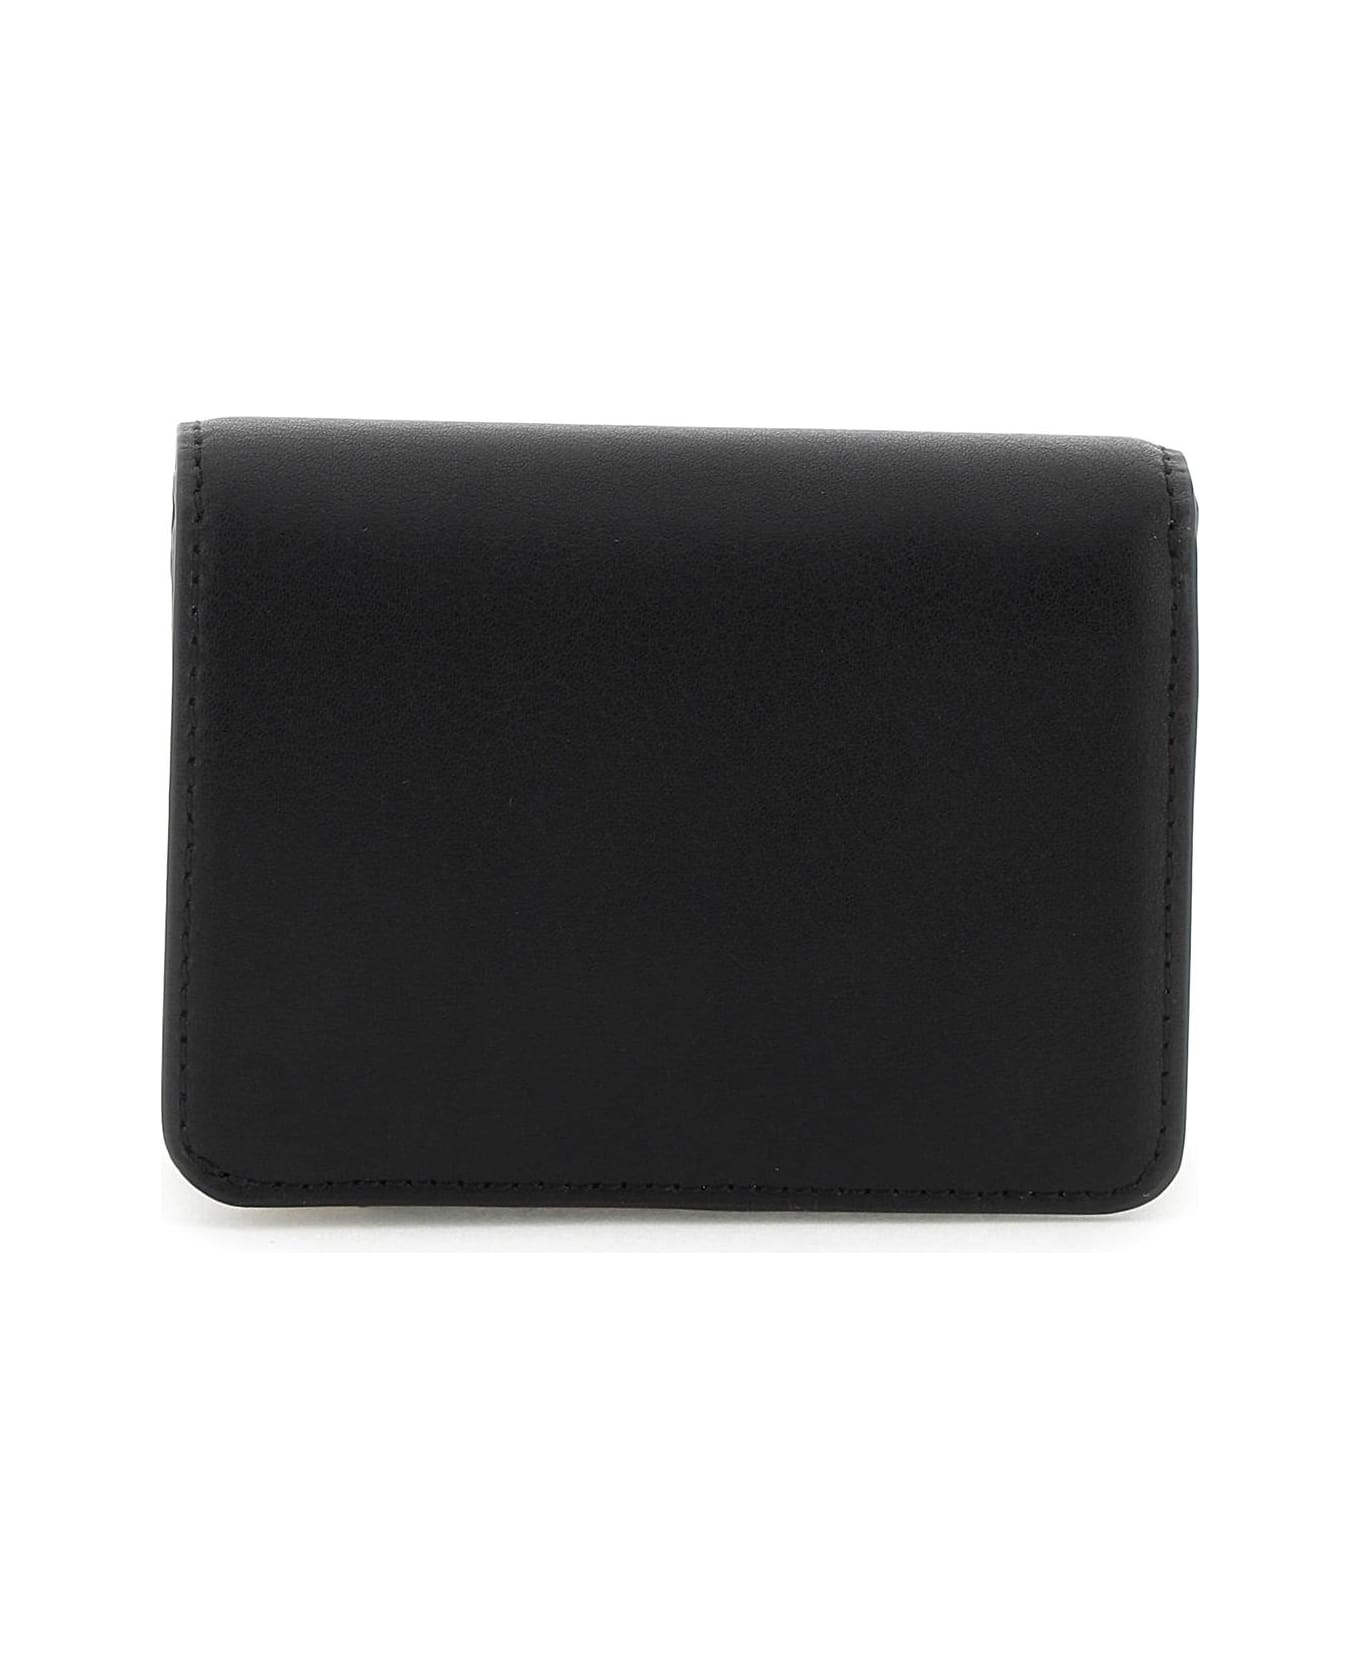 Marc Jacobs The J Marc Mini Compact Wallet - BLACK (Black) 財布